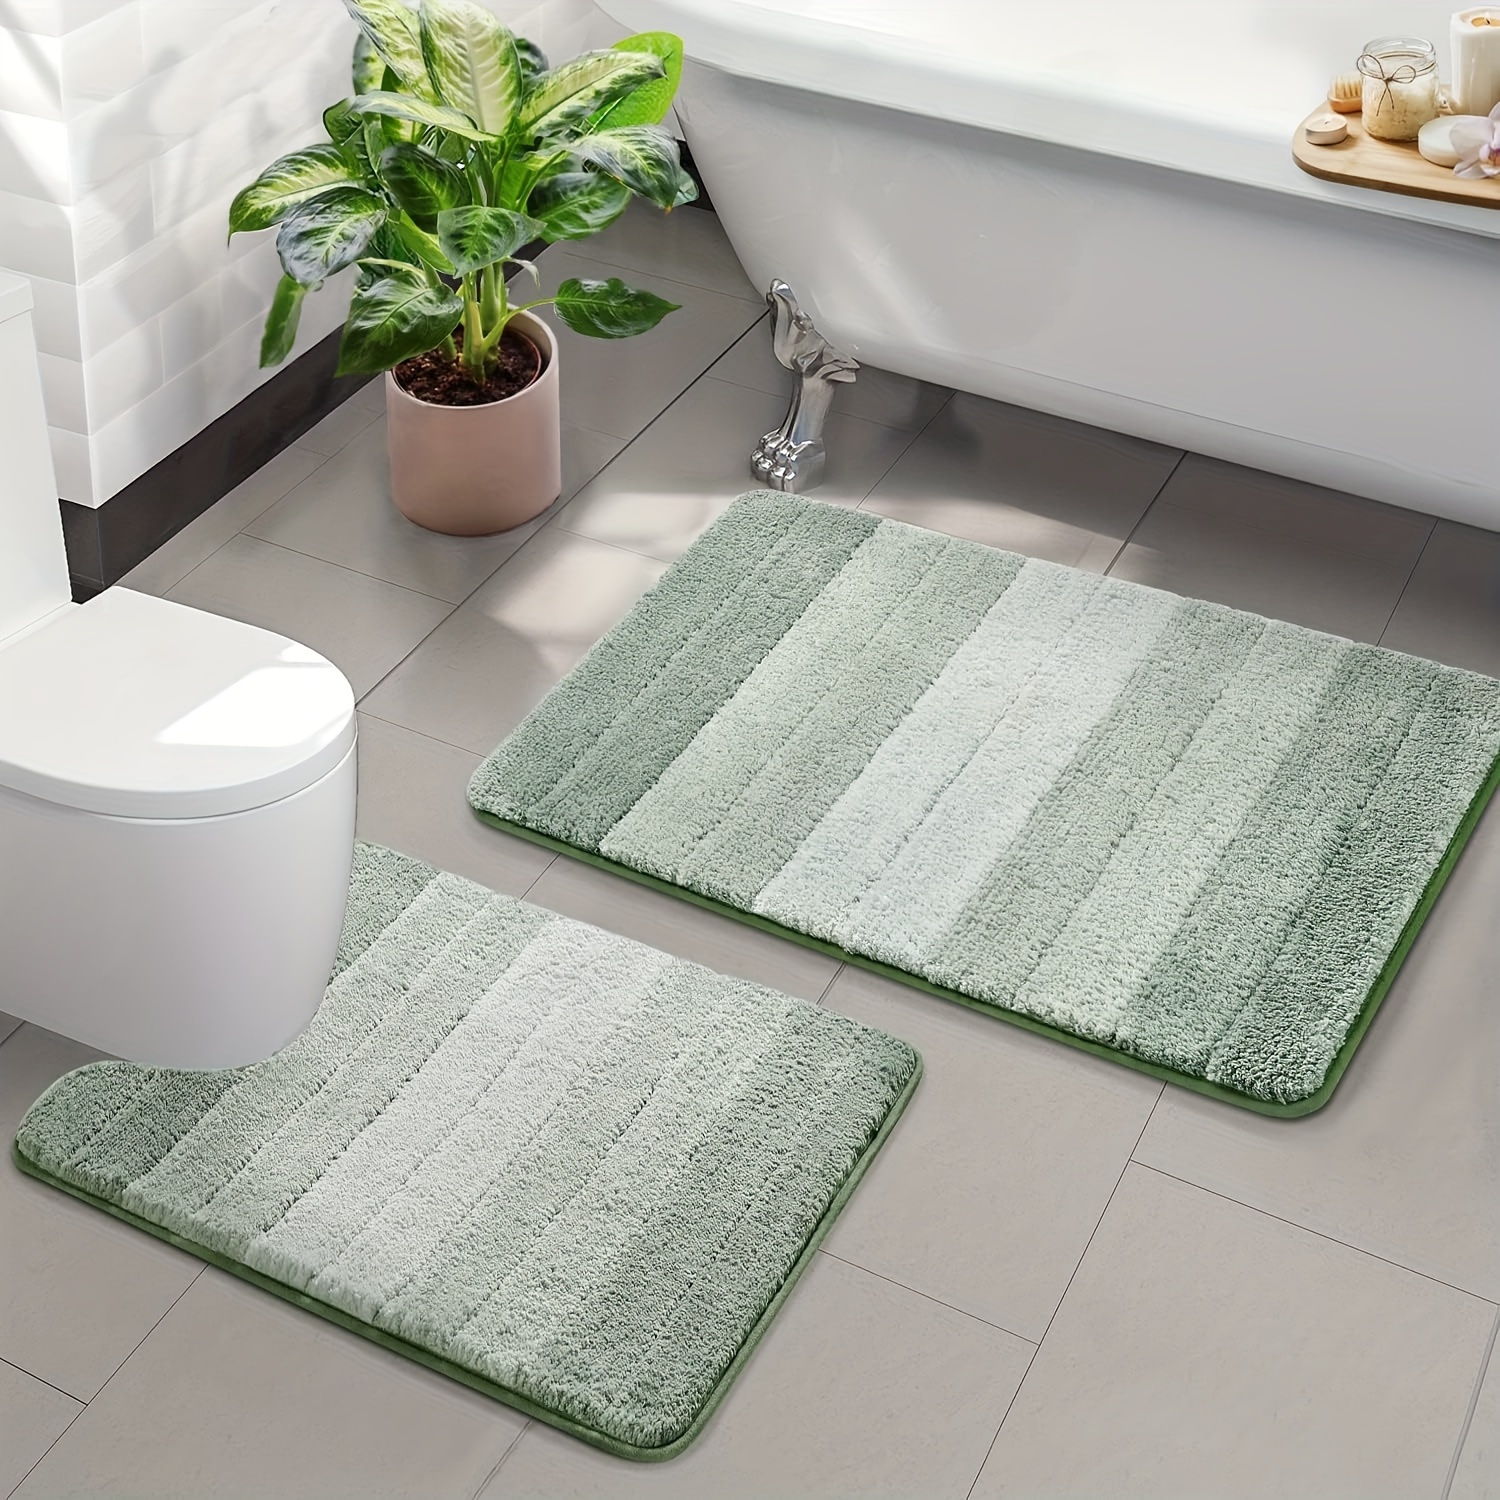 HOMEIDEAS Alfombras de baño, alfombra de baño antideslizante para baño de  20 x 32 pulgadas, tapetes de baño de microfibra extra suave y absorbente